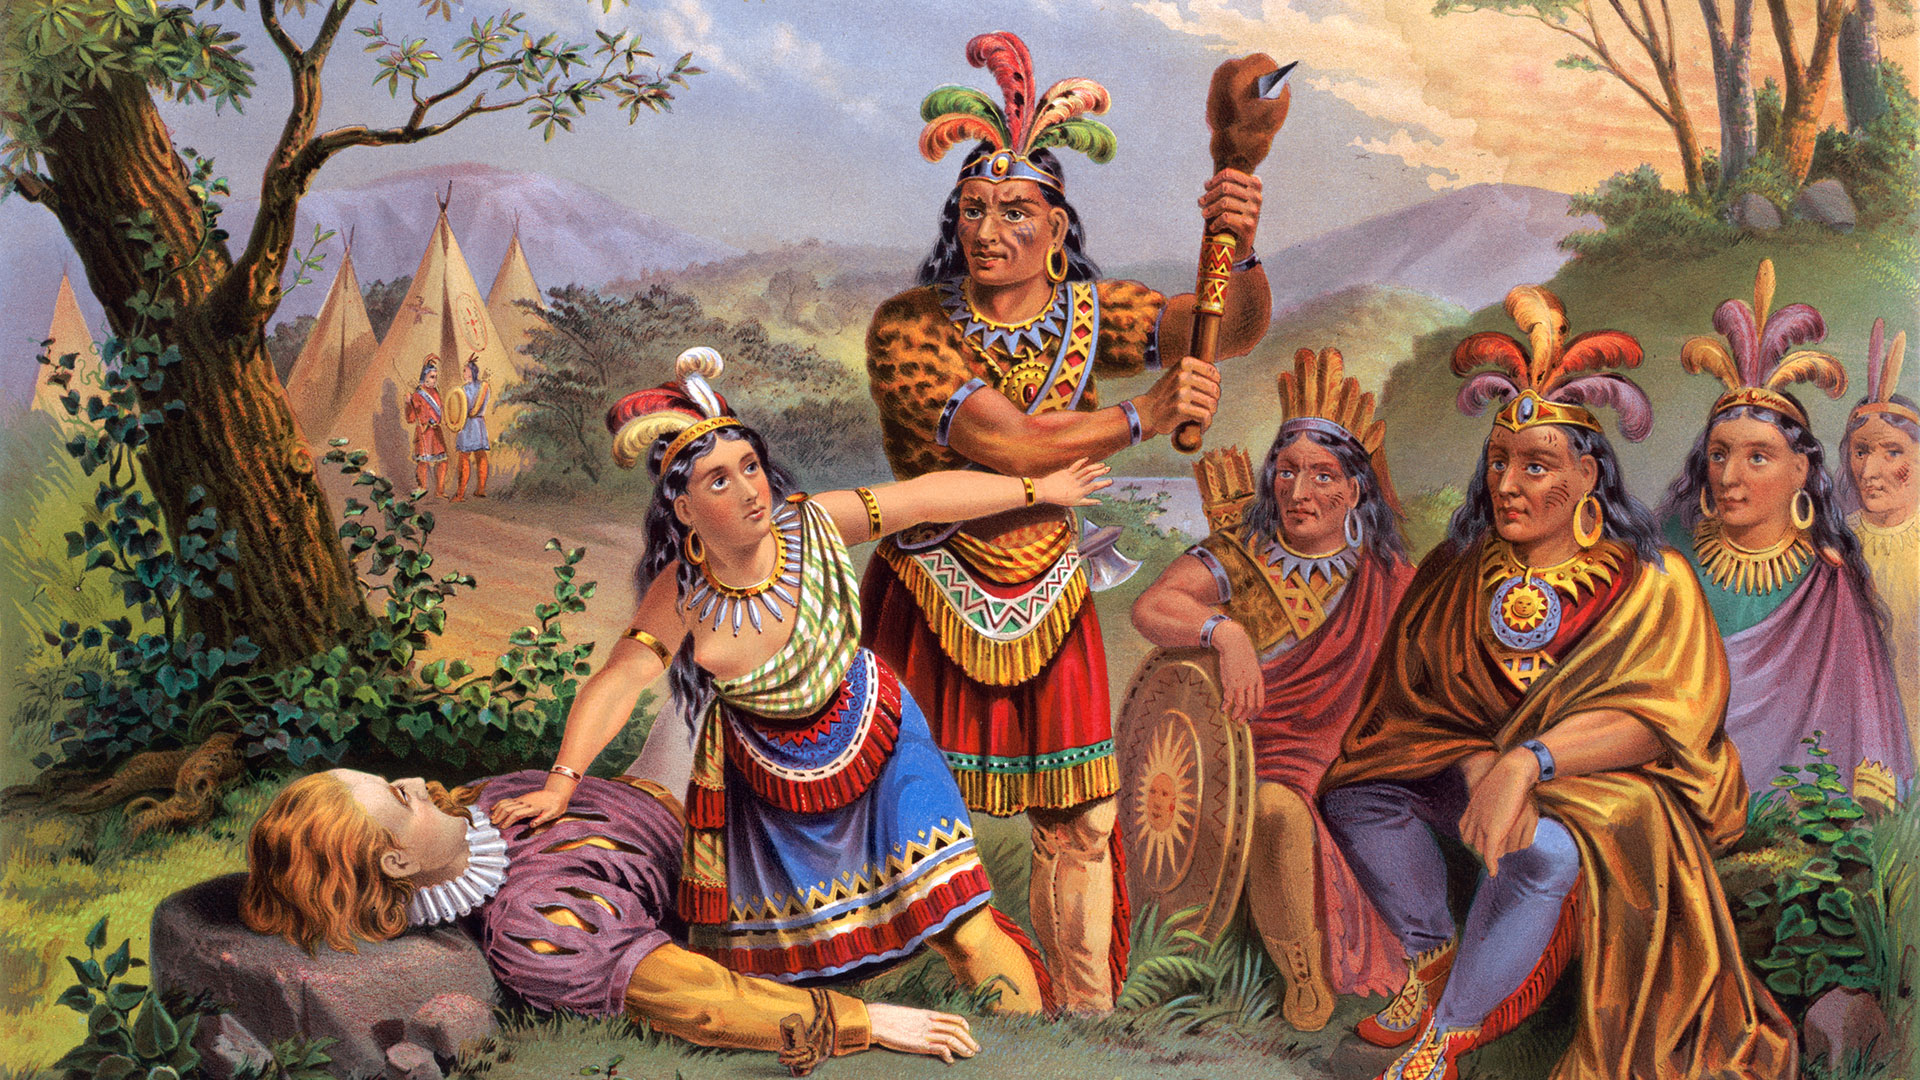 La ilustración antigua muestra a Pocahontas, hija del jefe Powhatan, salvando al capitán John Smith de la muerte arrojándose entre él y sus atacantes indios (Getty)